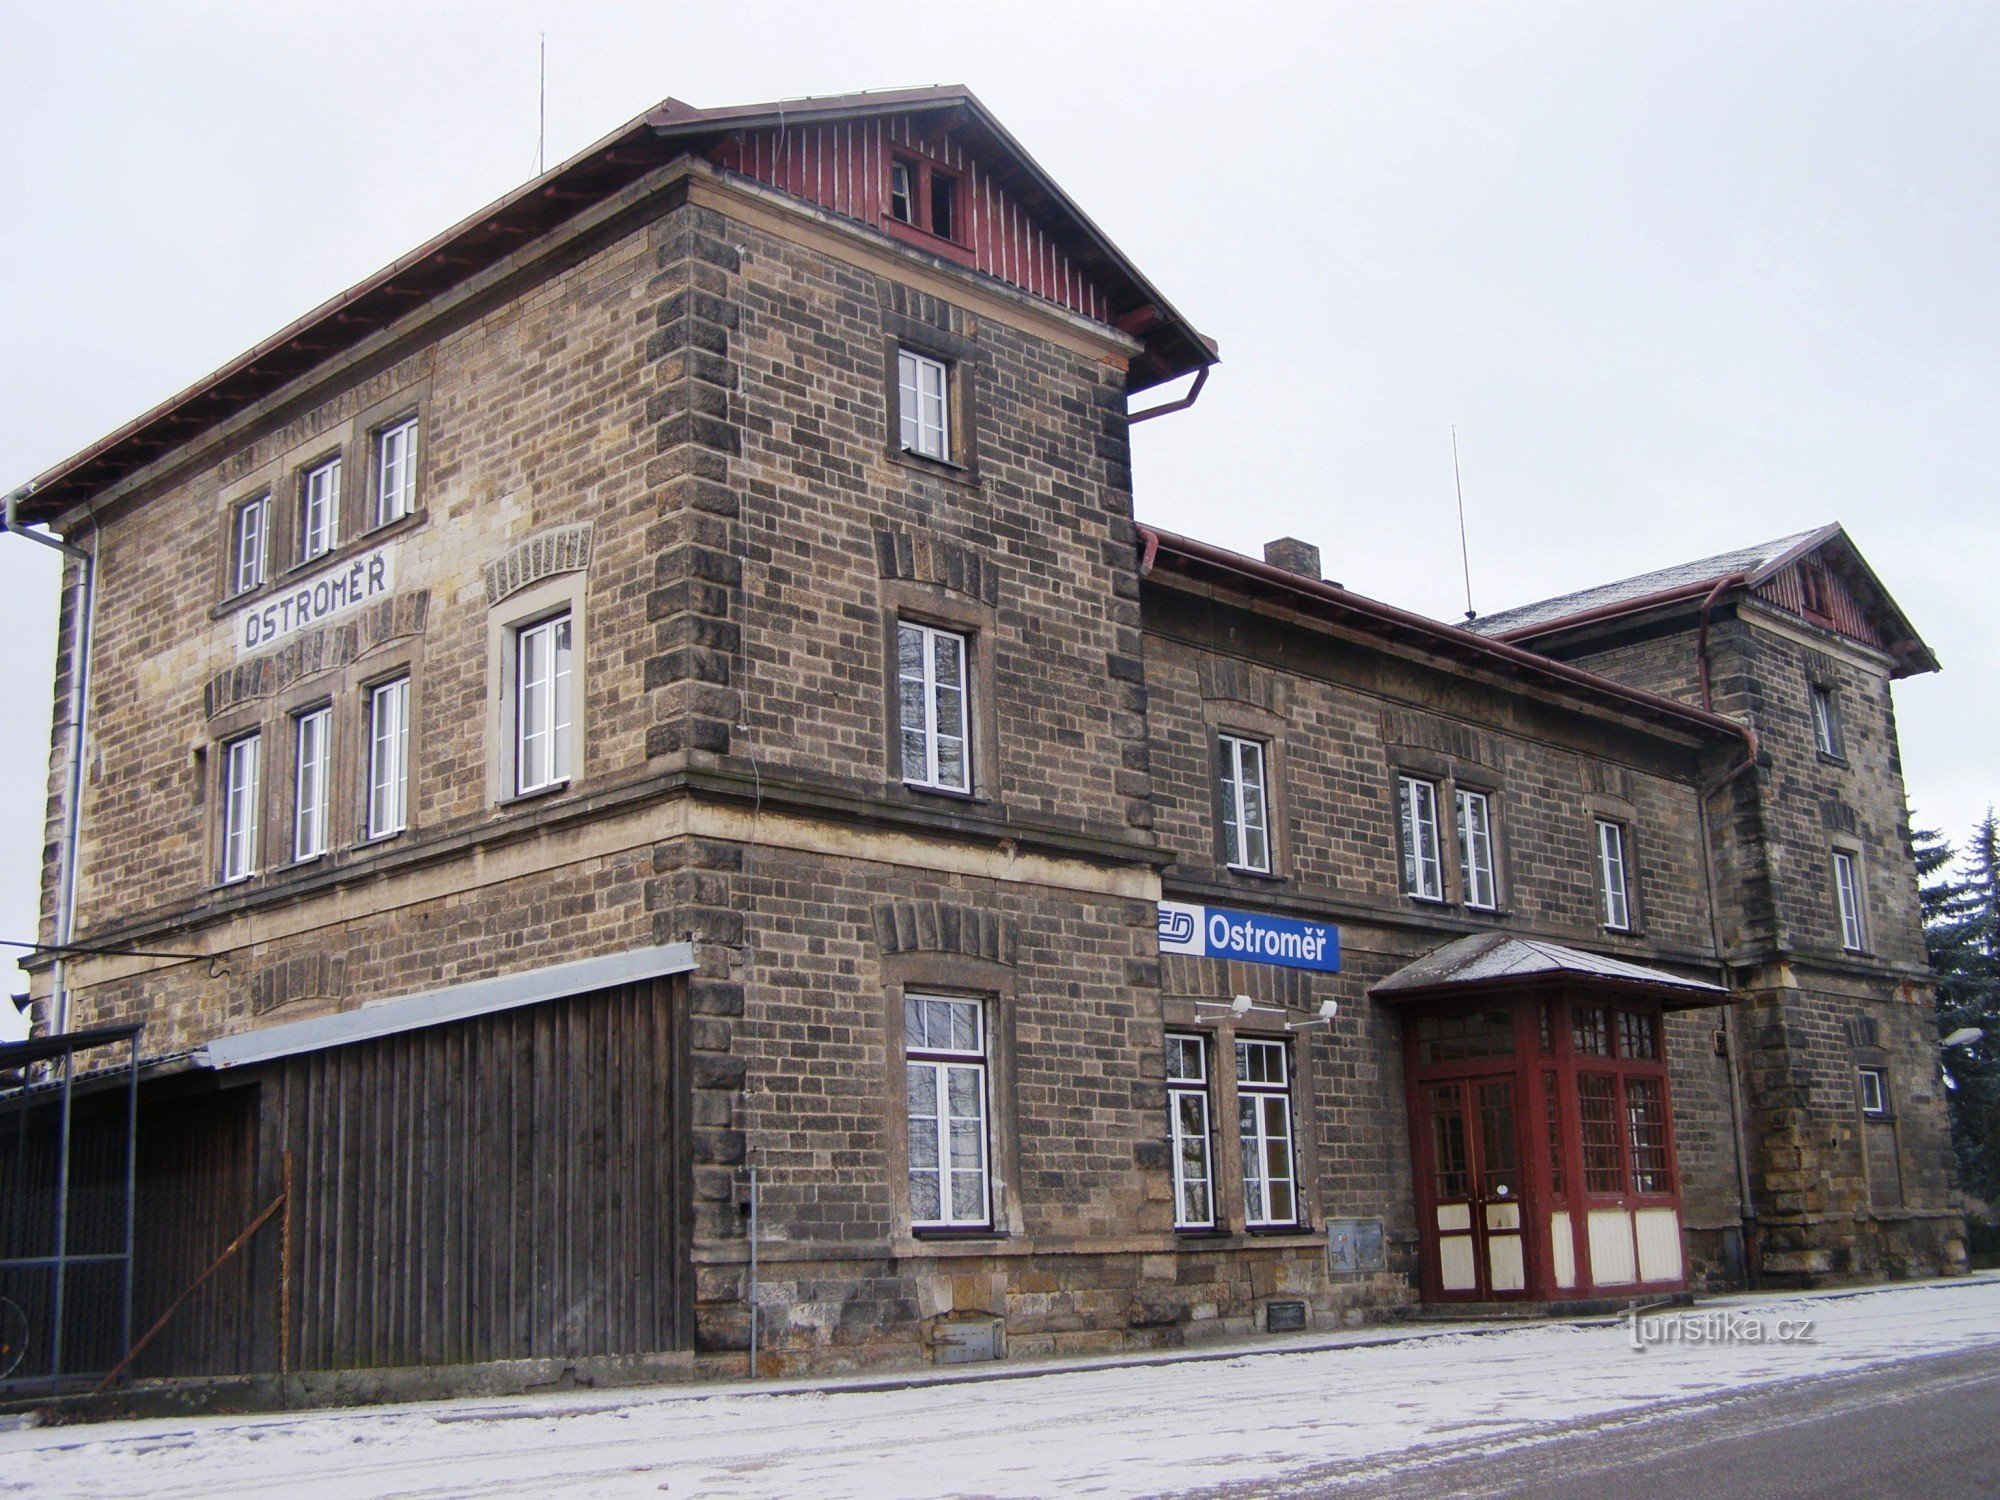 Ostroměr - stazione ferroviaria